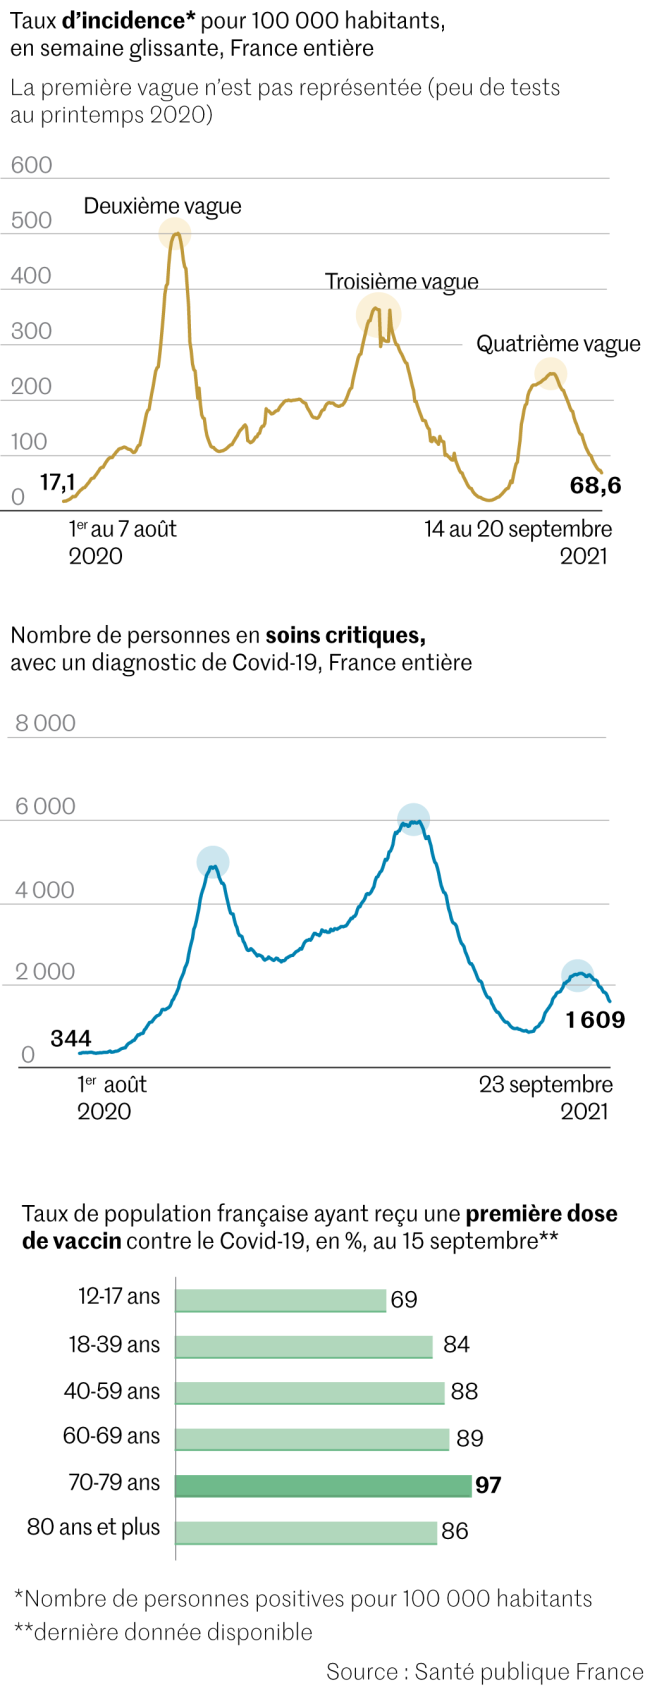 Infographie sur l’évolution de la pandémie de Covid-19 en France, le 23 septembre 2021.